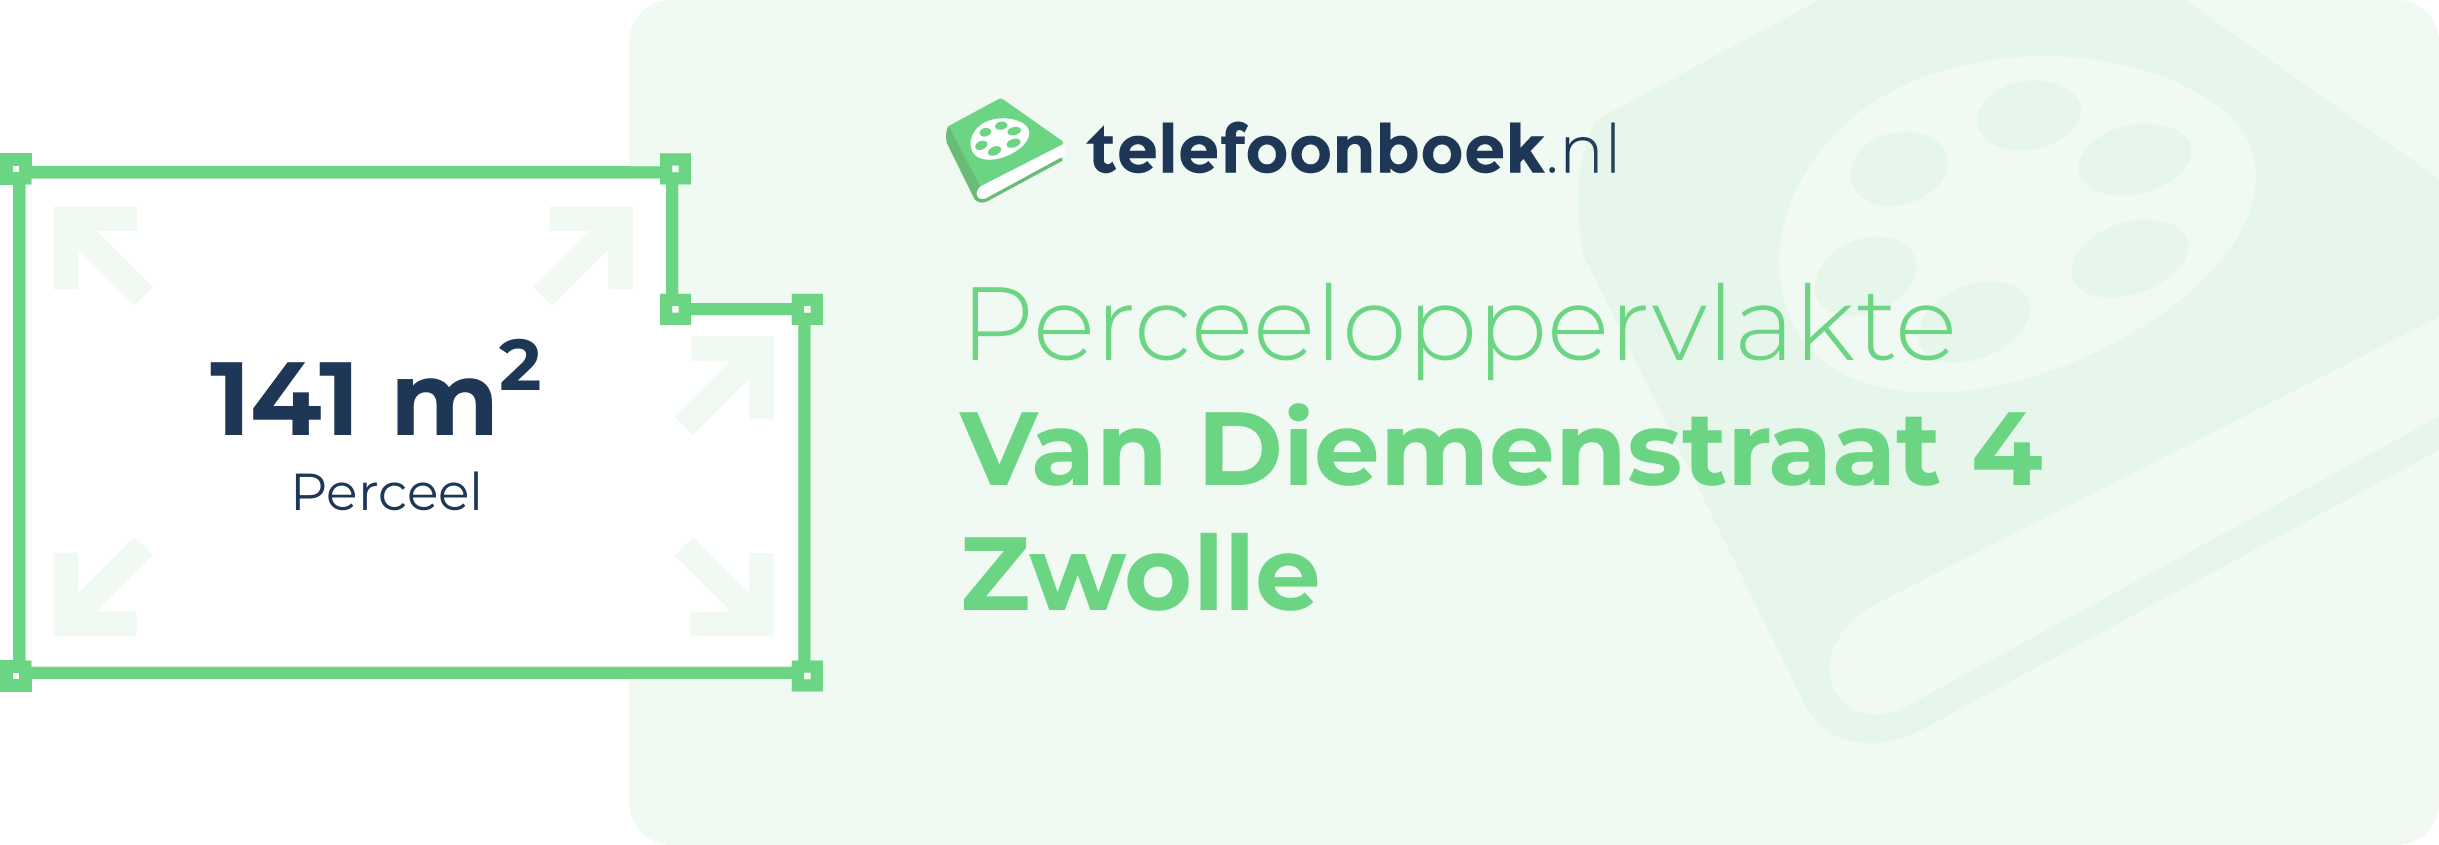 Perceeloppervlakte Van Diemenstraat 4 Zwolle